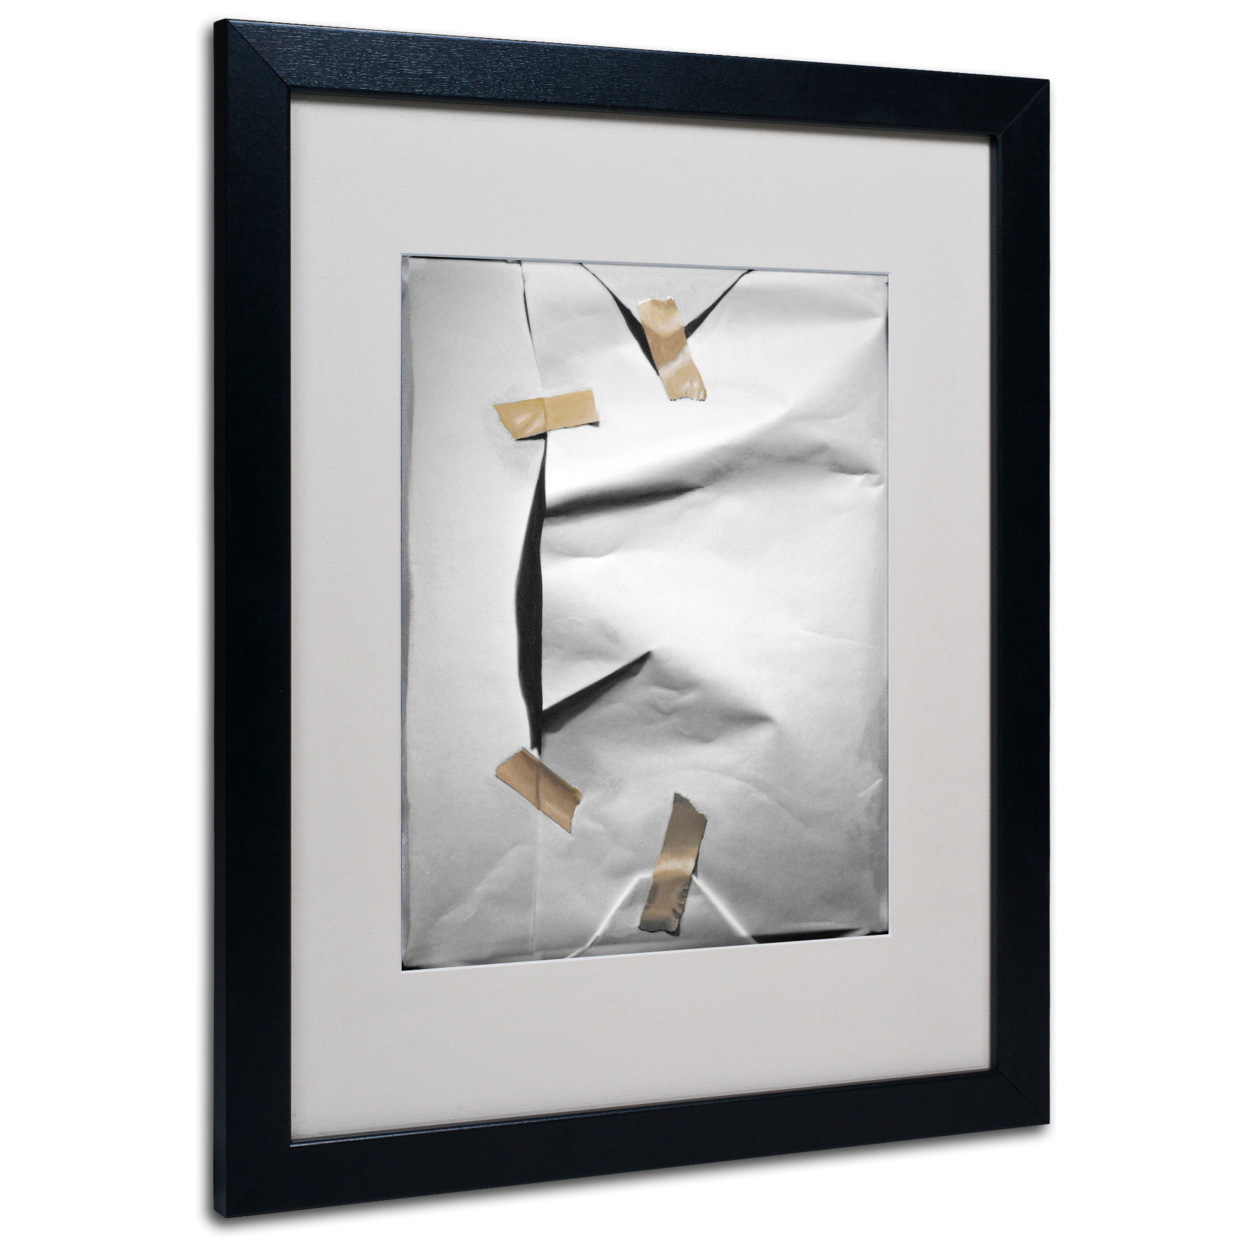 Roderick Stevens 'White Wrap' Black Wooden Framed Art 18 X 22 Inches